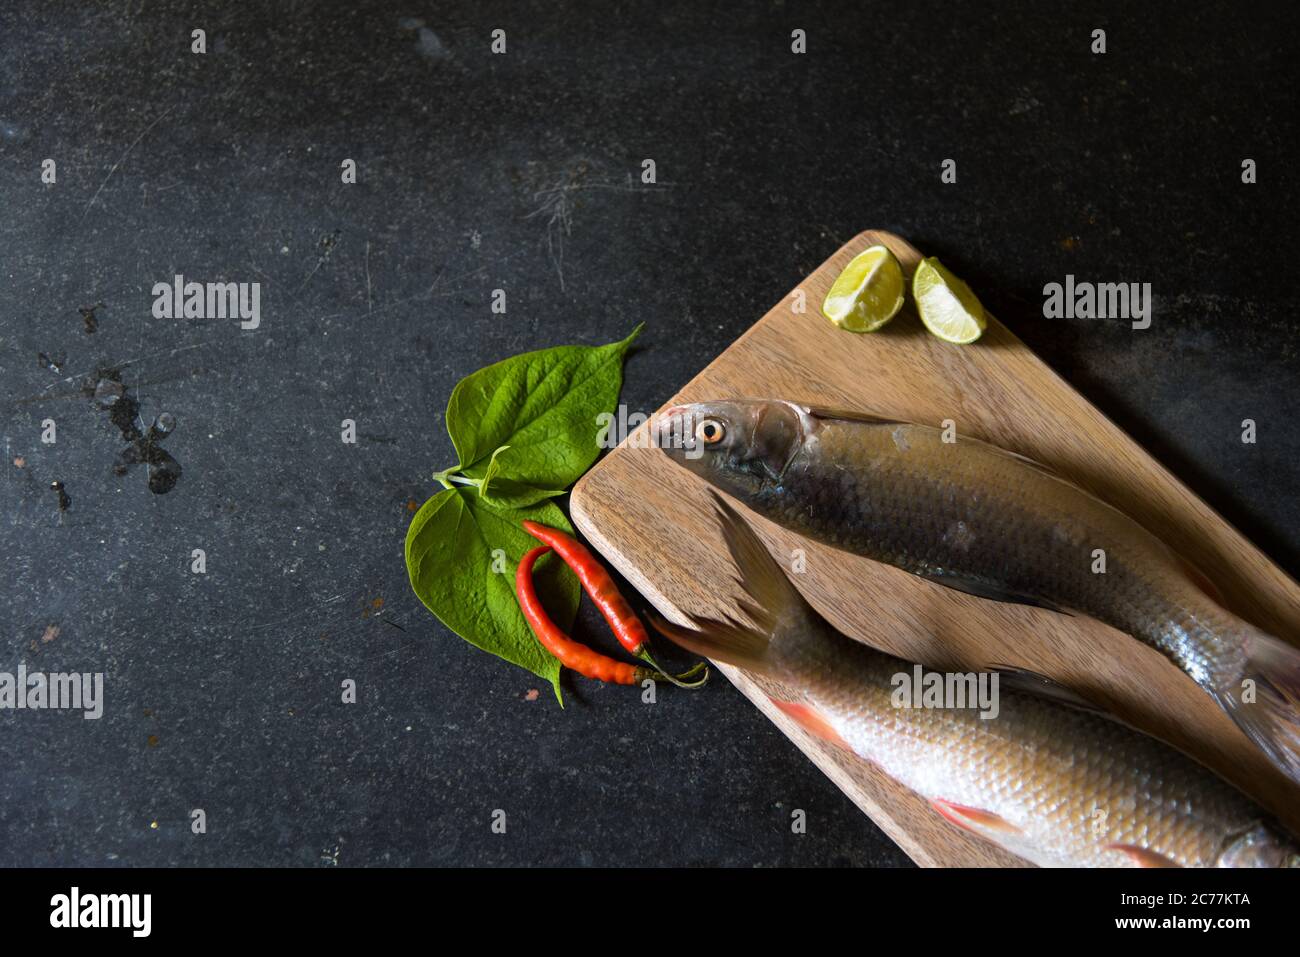 Demi-vue du poisson cru sur fond noir avec utilisation de l'accent sélectif sur une partie particulière du poisson et le reste du poisson et d'autres ingrédients bl Banque D'Images